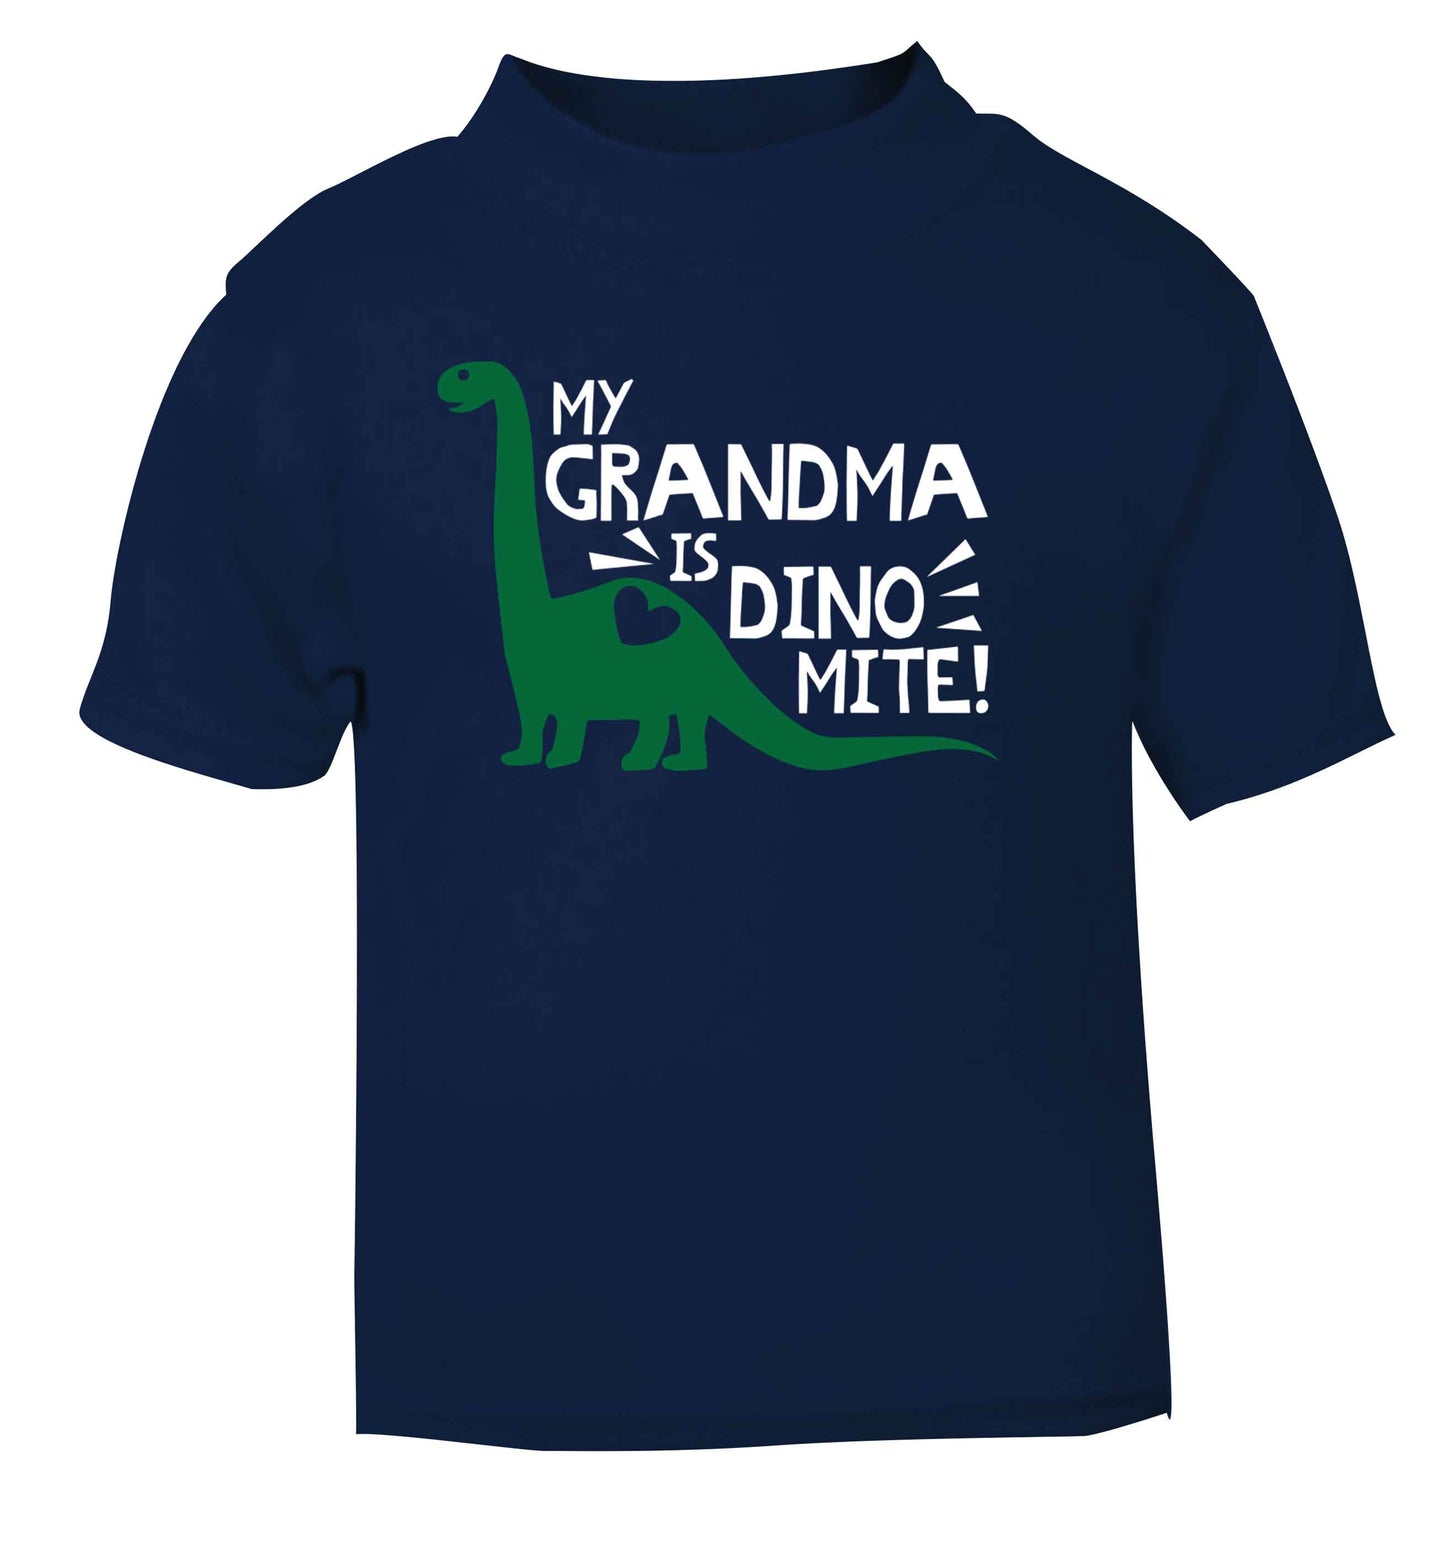 My grandma is dinomite! navy Baby Toddler Tshirt 2 Years